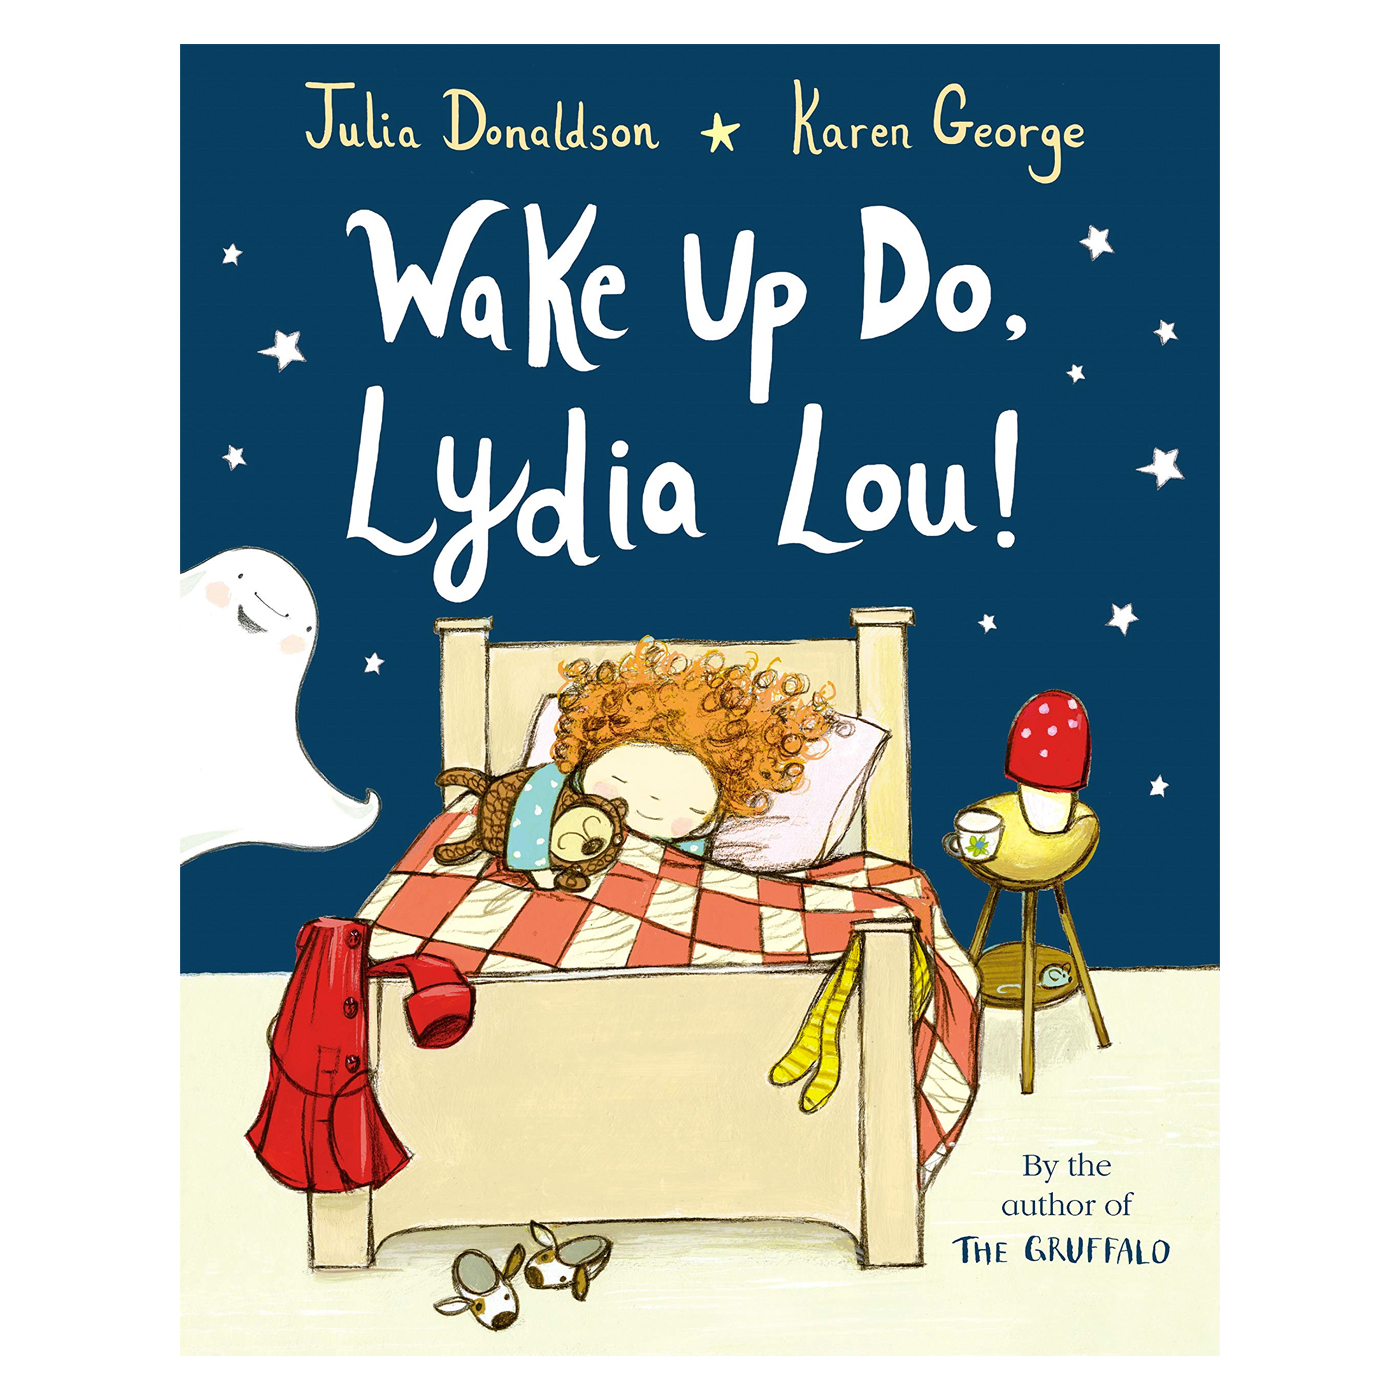  Wake Up Do, Lydia Lou!